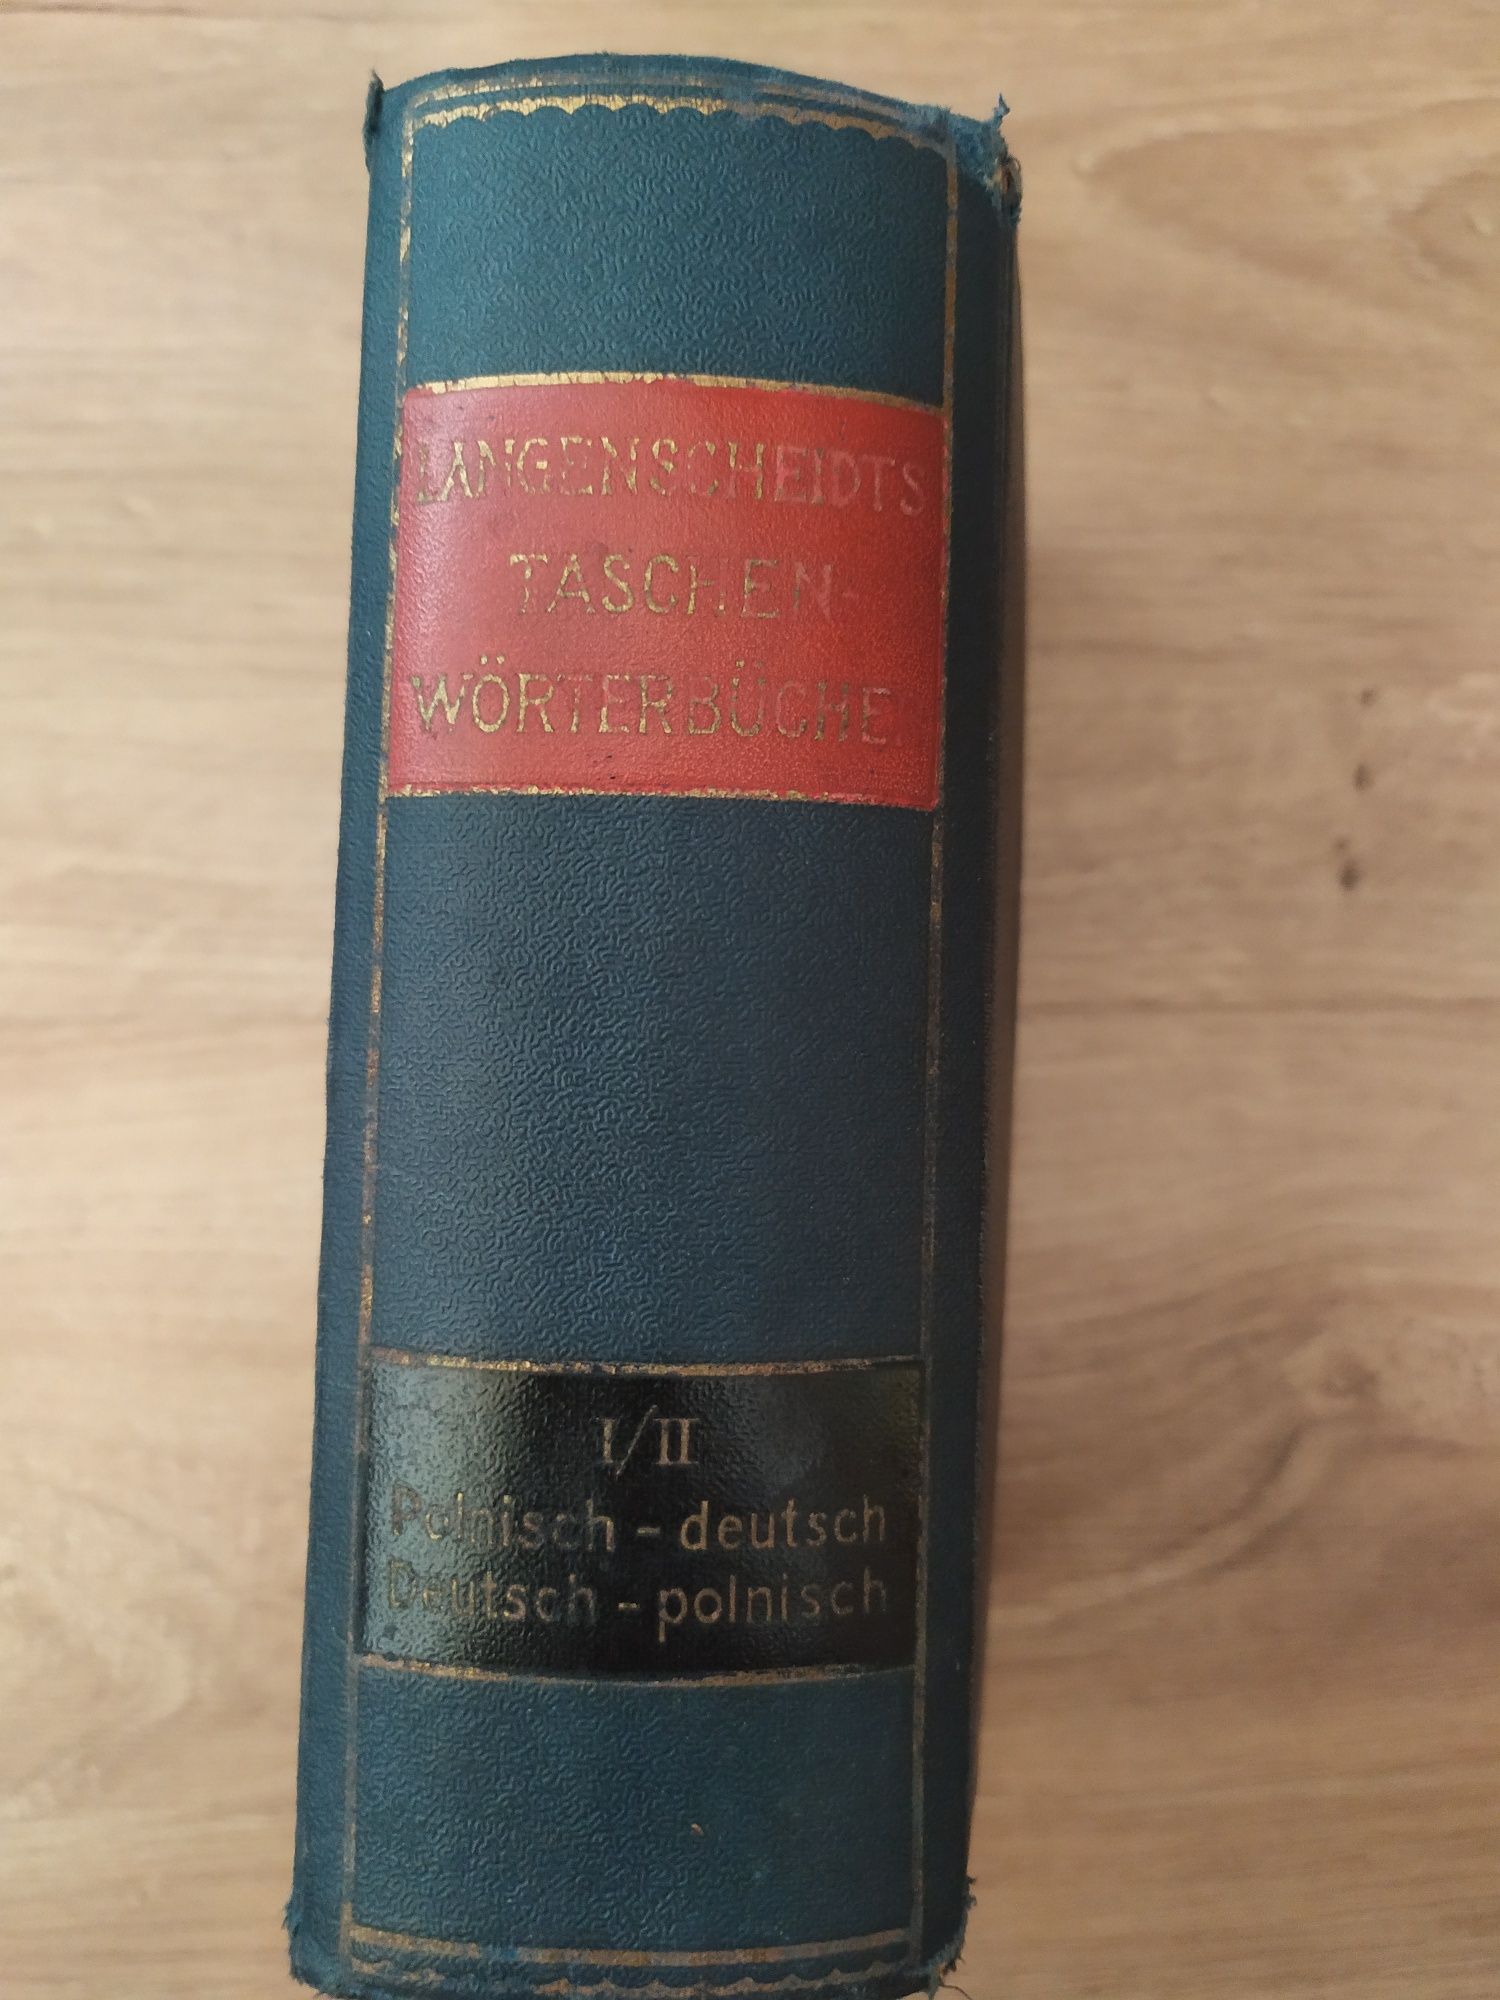 Słownik polsko-niemiecki, niemiecko-polski z 1920 r.